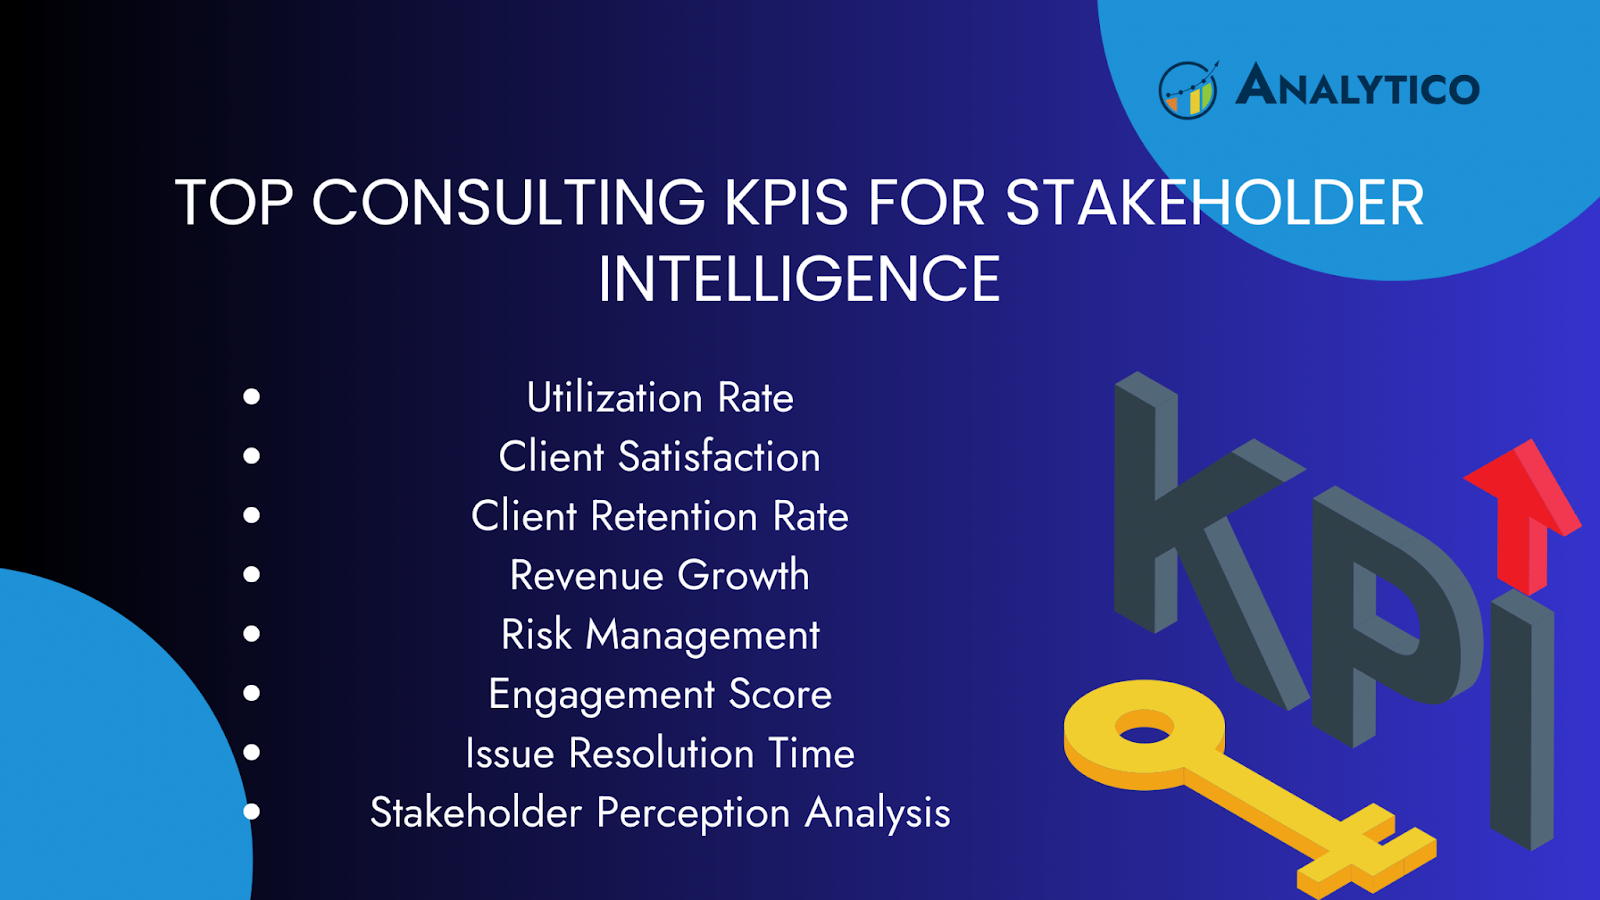 KPIs for Stakeholder Intelligence, Consultant KPIs